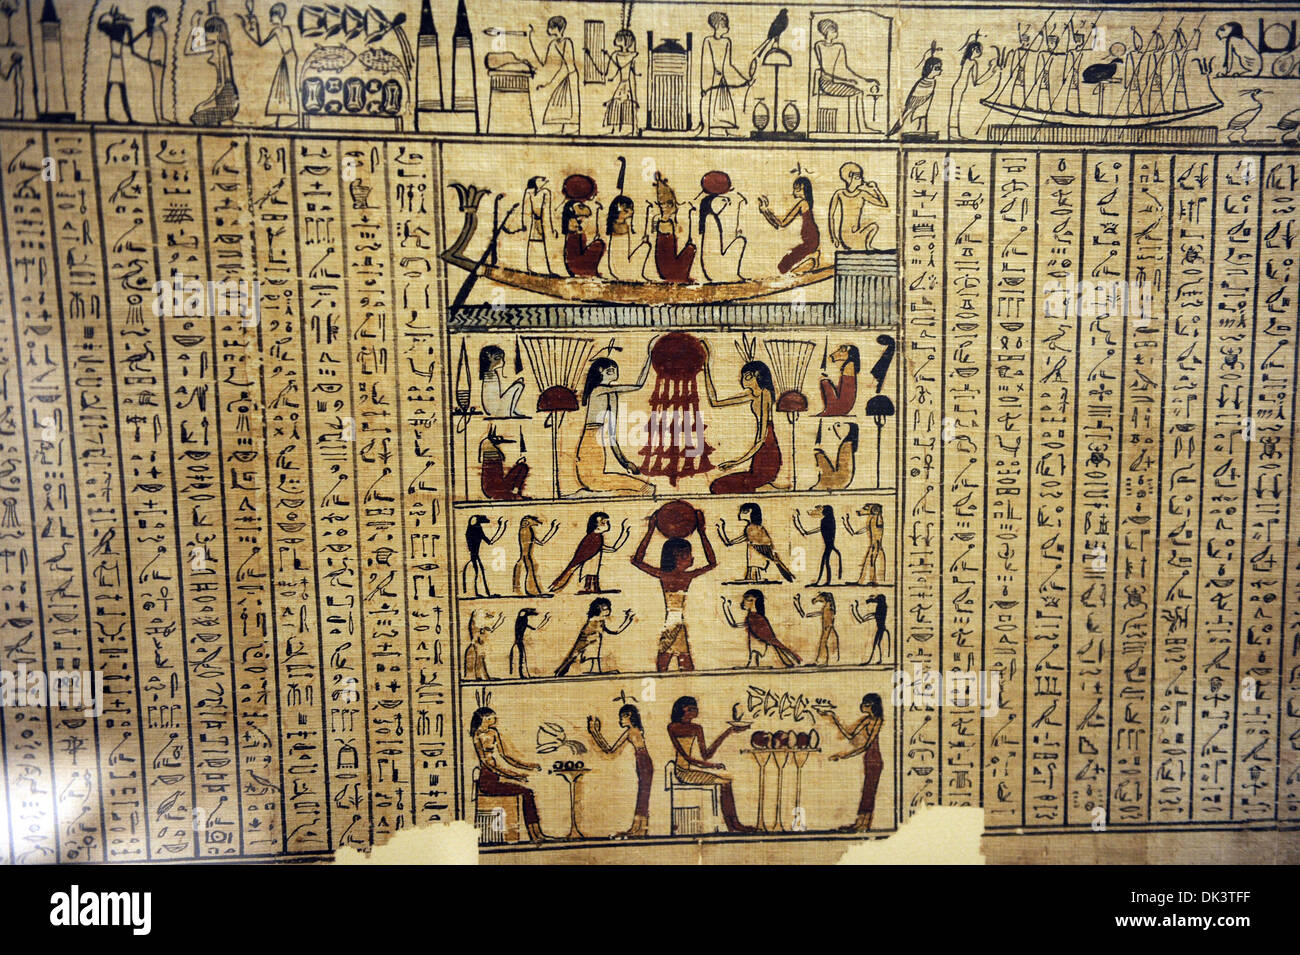 Prenota della morte della padrona Neferini. Il papiro. Corsivo geroglifico. Regno tolemaico. 4th-1st secolo A.C. Achmim. Foto Stock